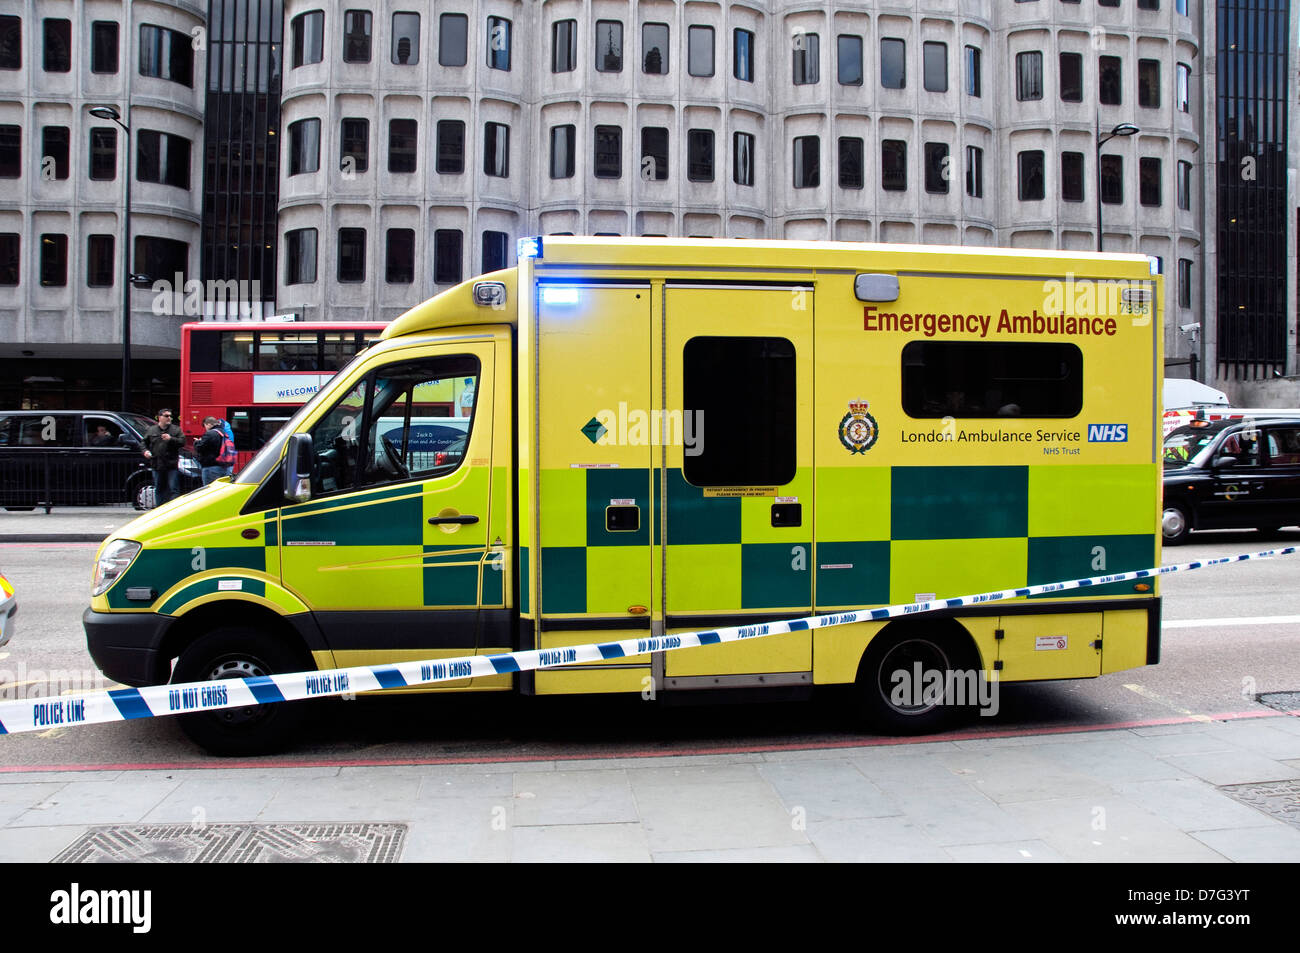 London Emergency Ambulance mit Polizeiabsperrung Band Spruch kreuzen nicht, Euston Road, London England UK Stockfoto